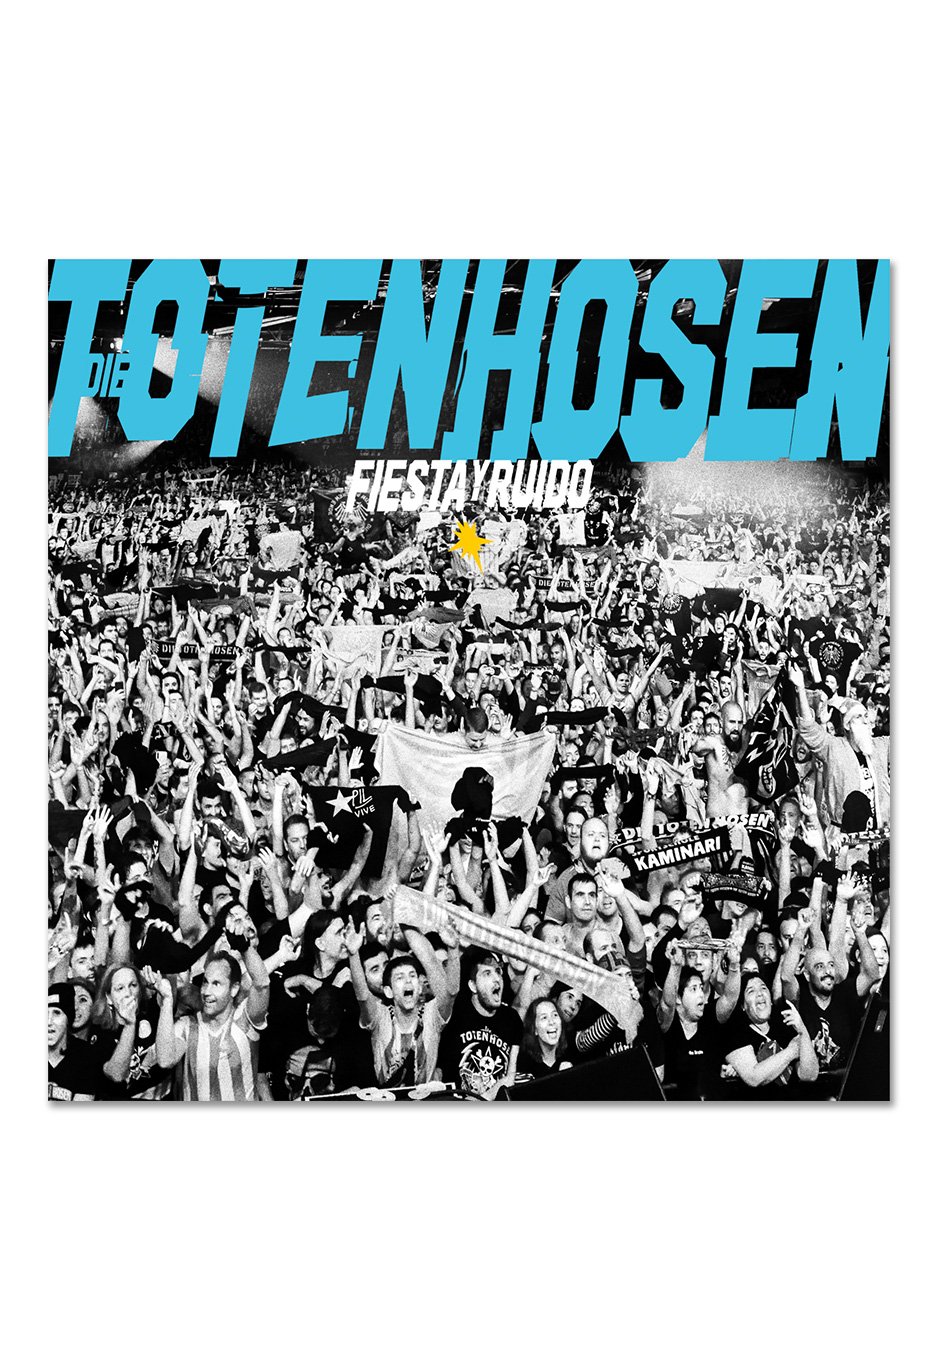 Die Toten Hosen - Fiesta Y Ruido: Die Toten Hosen Live In Argentinien Ltd. White/Blue - Colored 2 Vinyl